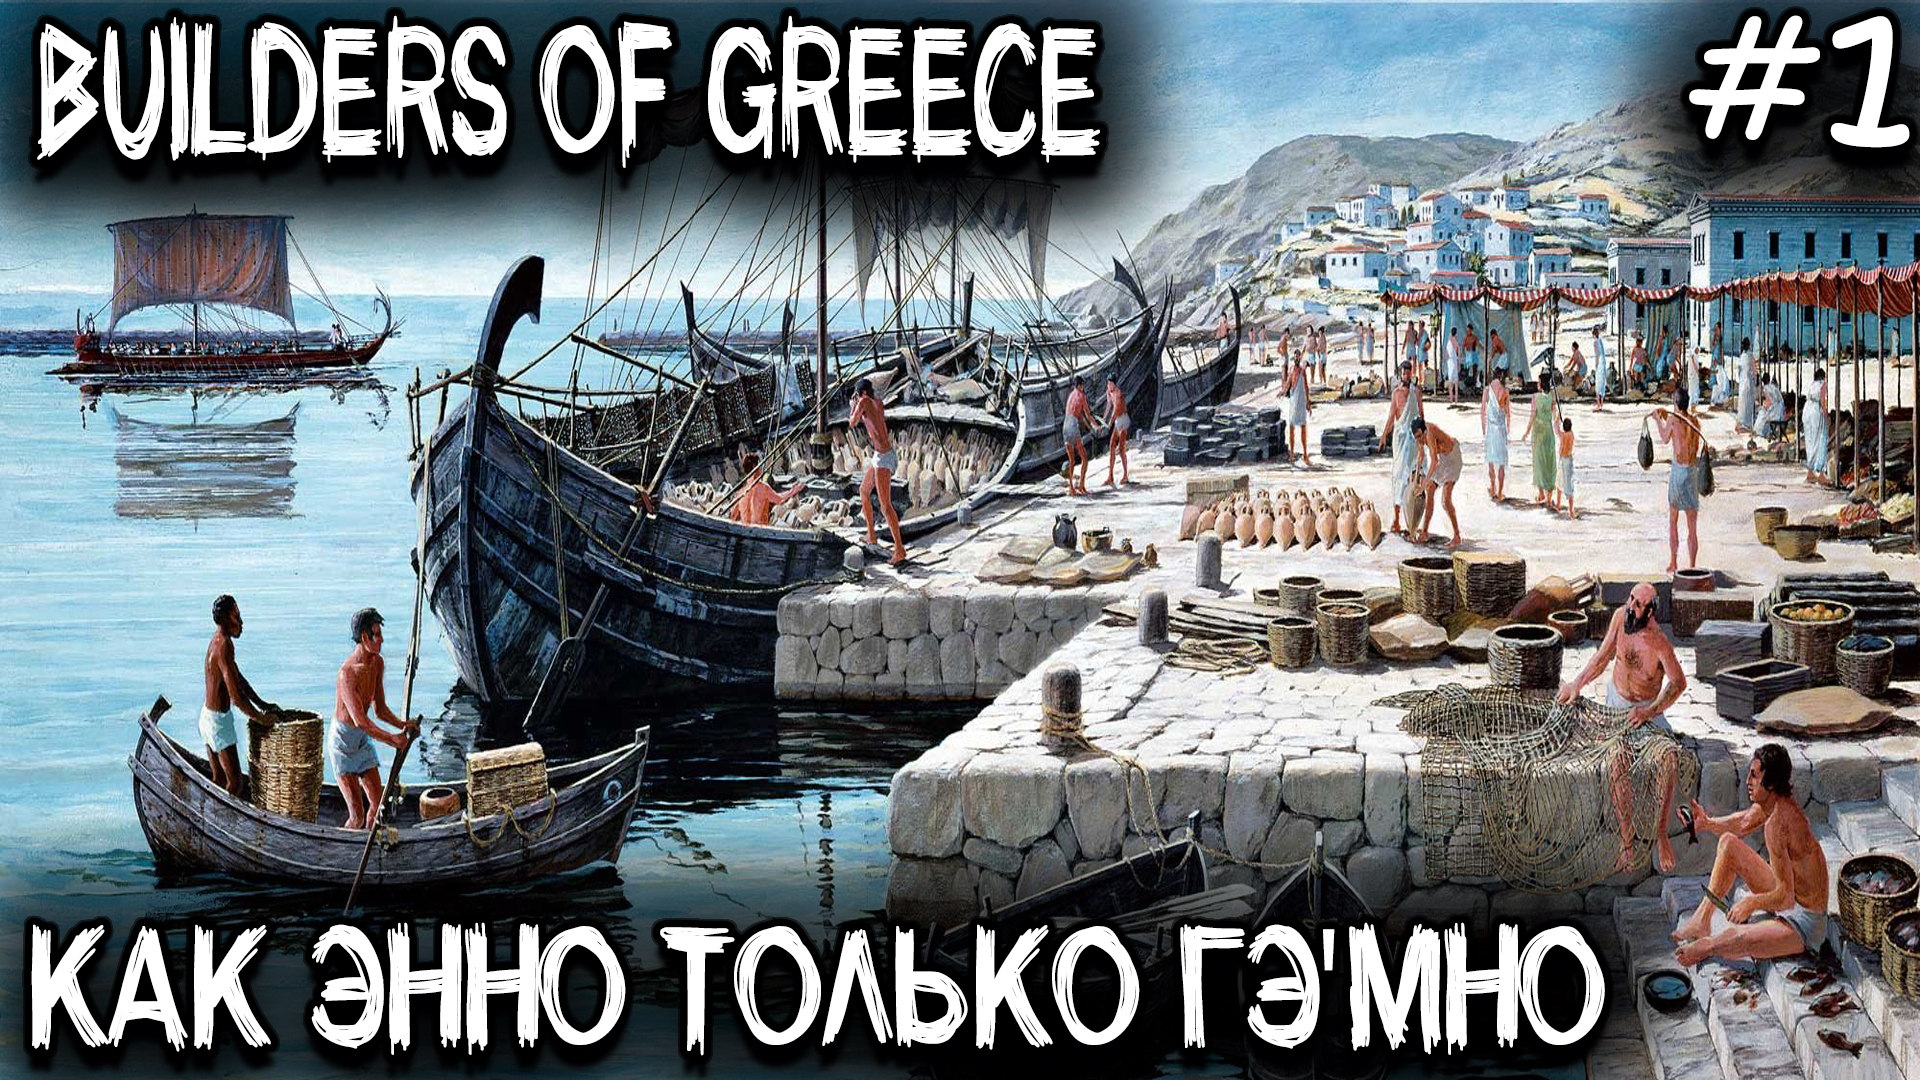 Builders of Greece - обзор и прохождение новой градостроительной стратегии в духе серии игр Anno #1